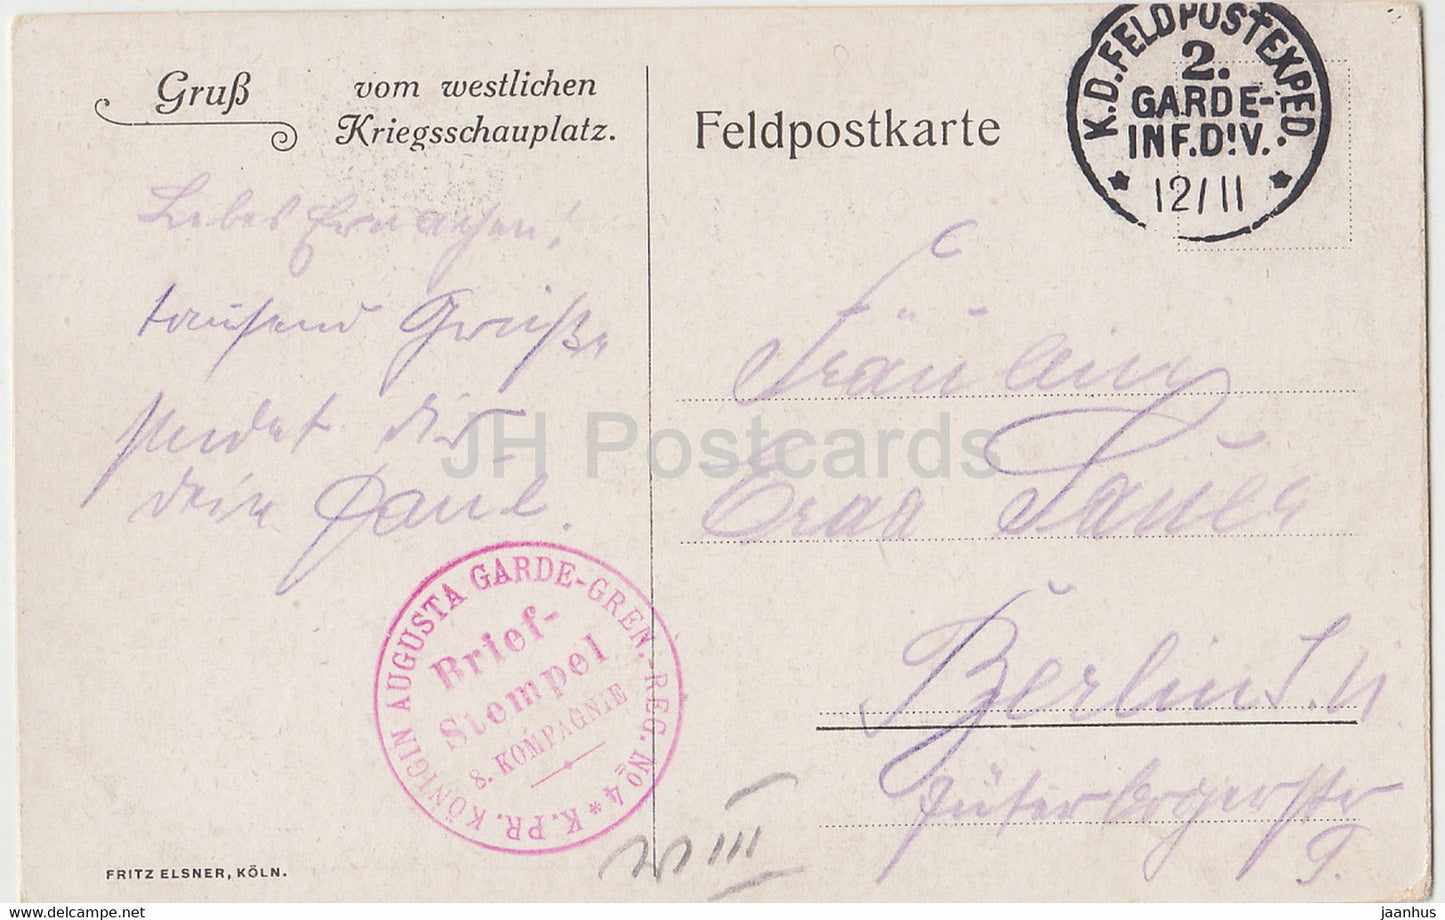 Gruss vom westlichen Kriegsschauplatz - Konigin Augusta Garde Gren Feldpostkarte - old postcard - France - used